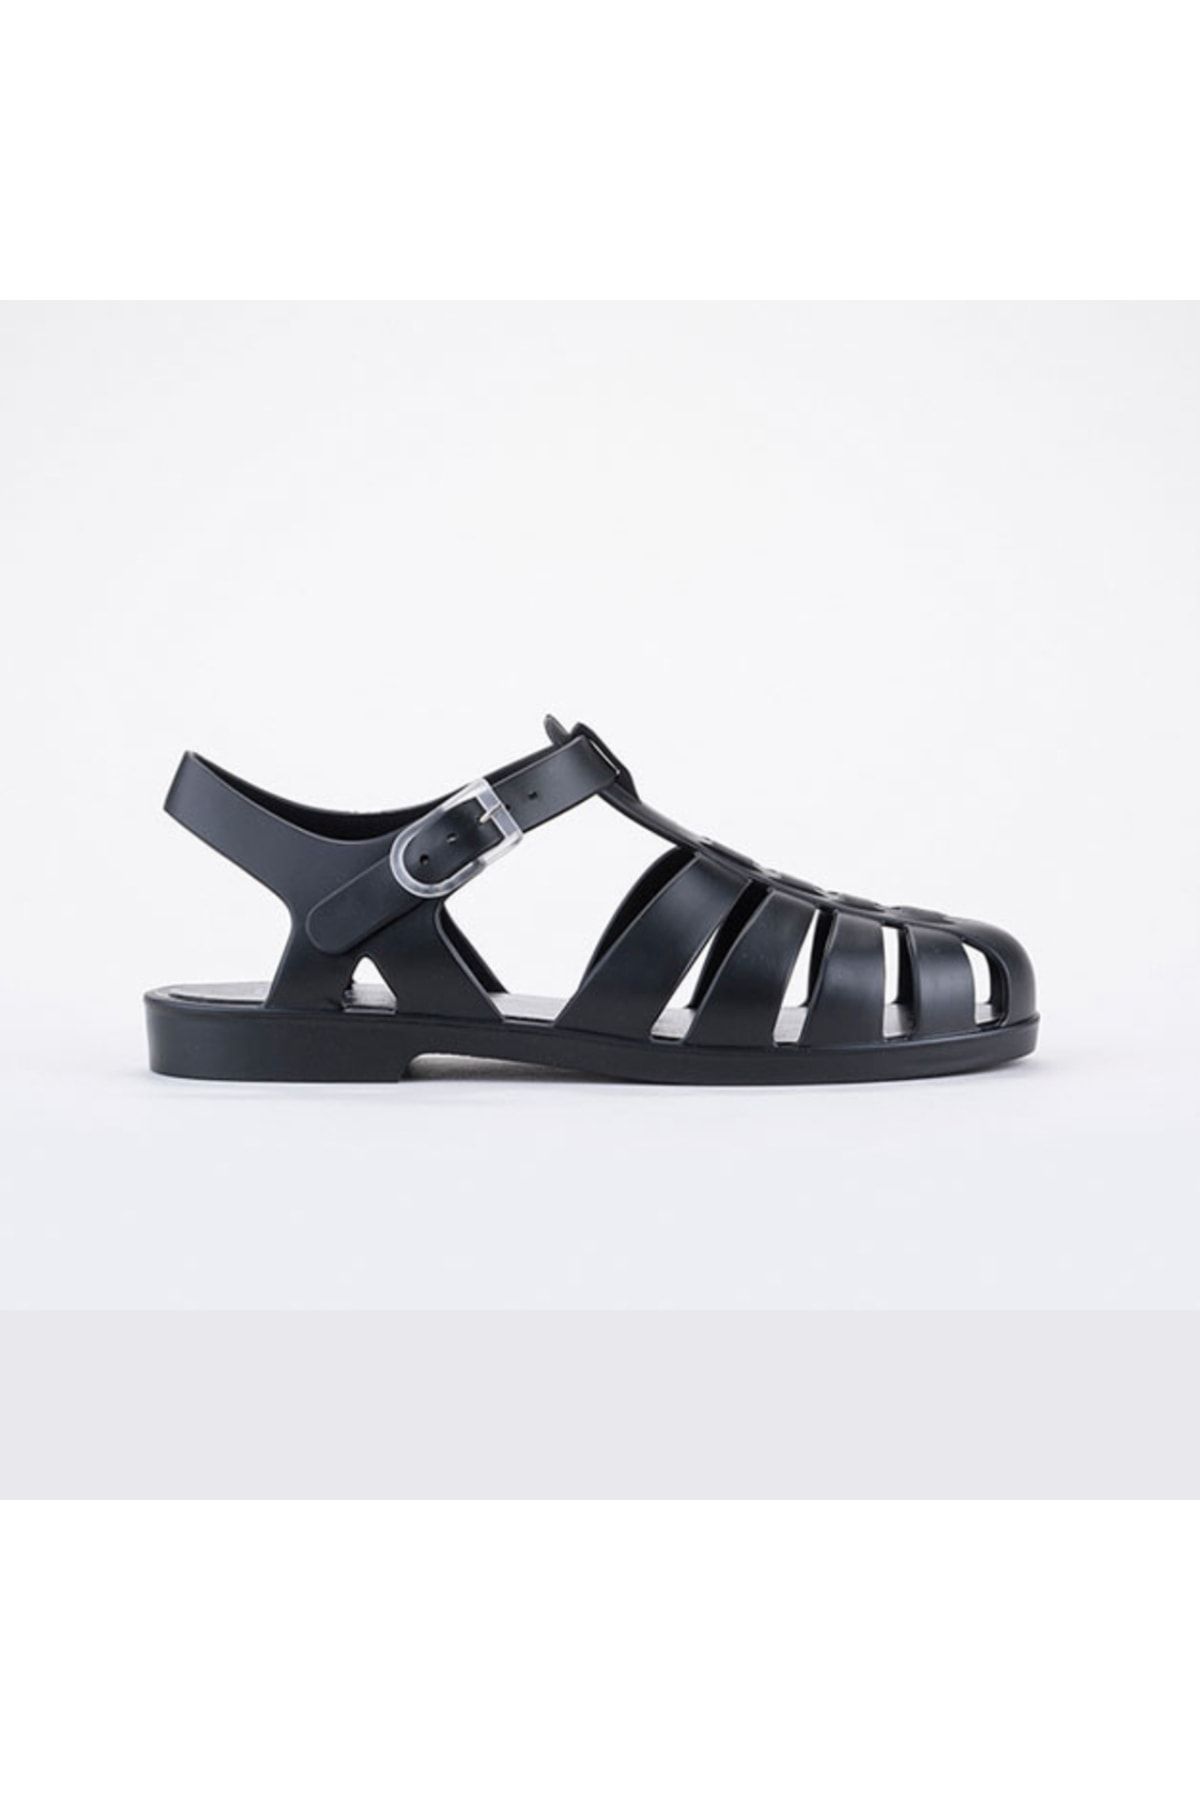 IGOR İgor S10259 Biarritz Mate Kadın Siyah Sandalet